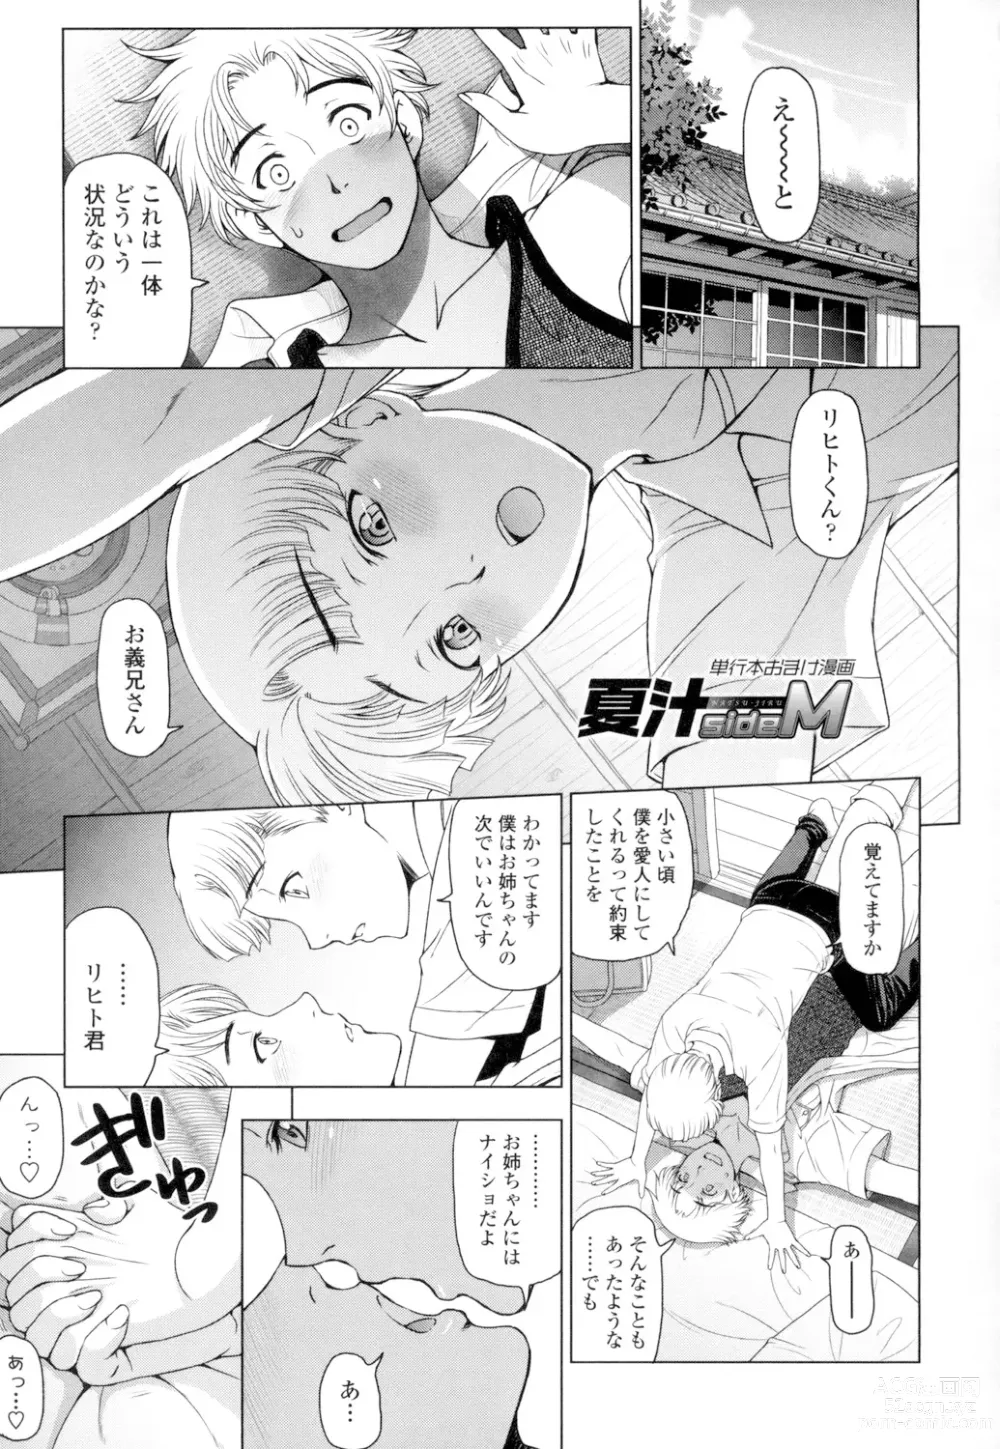 Page 211 of manga Natsu-jiru ~Ase ni Mamirete Gucchagucha~